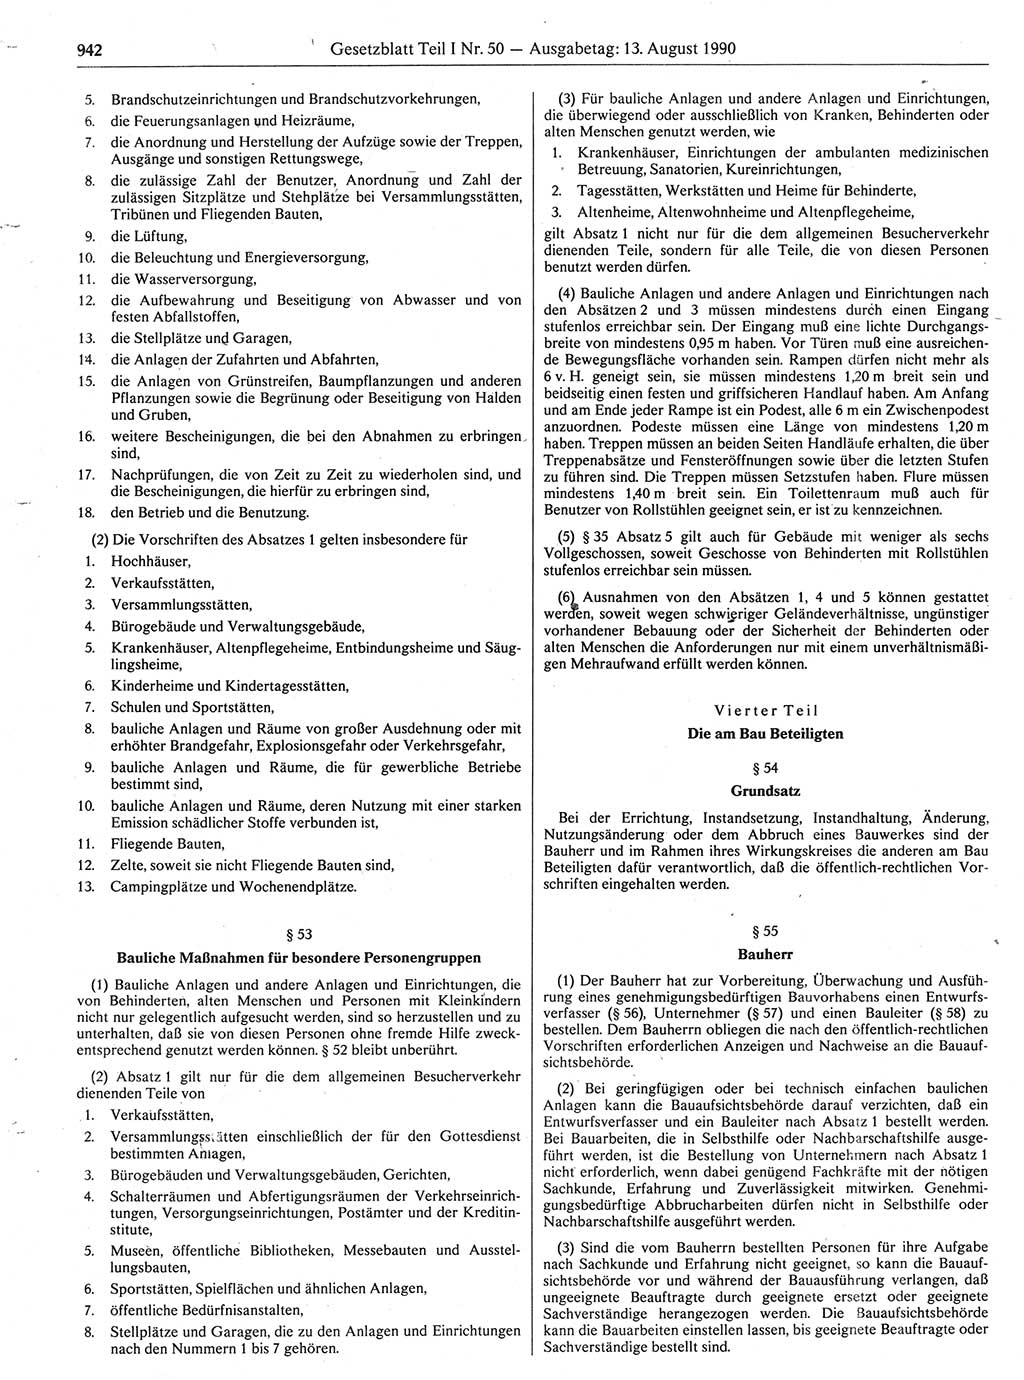 Gesetzblatt (GBl.) der Deutschen Demokratischen Republik (DDR) Teil Ⅰ 1990, Seite 942 (GBl. DDR Ⅰ 1990, S. 942)